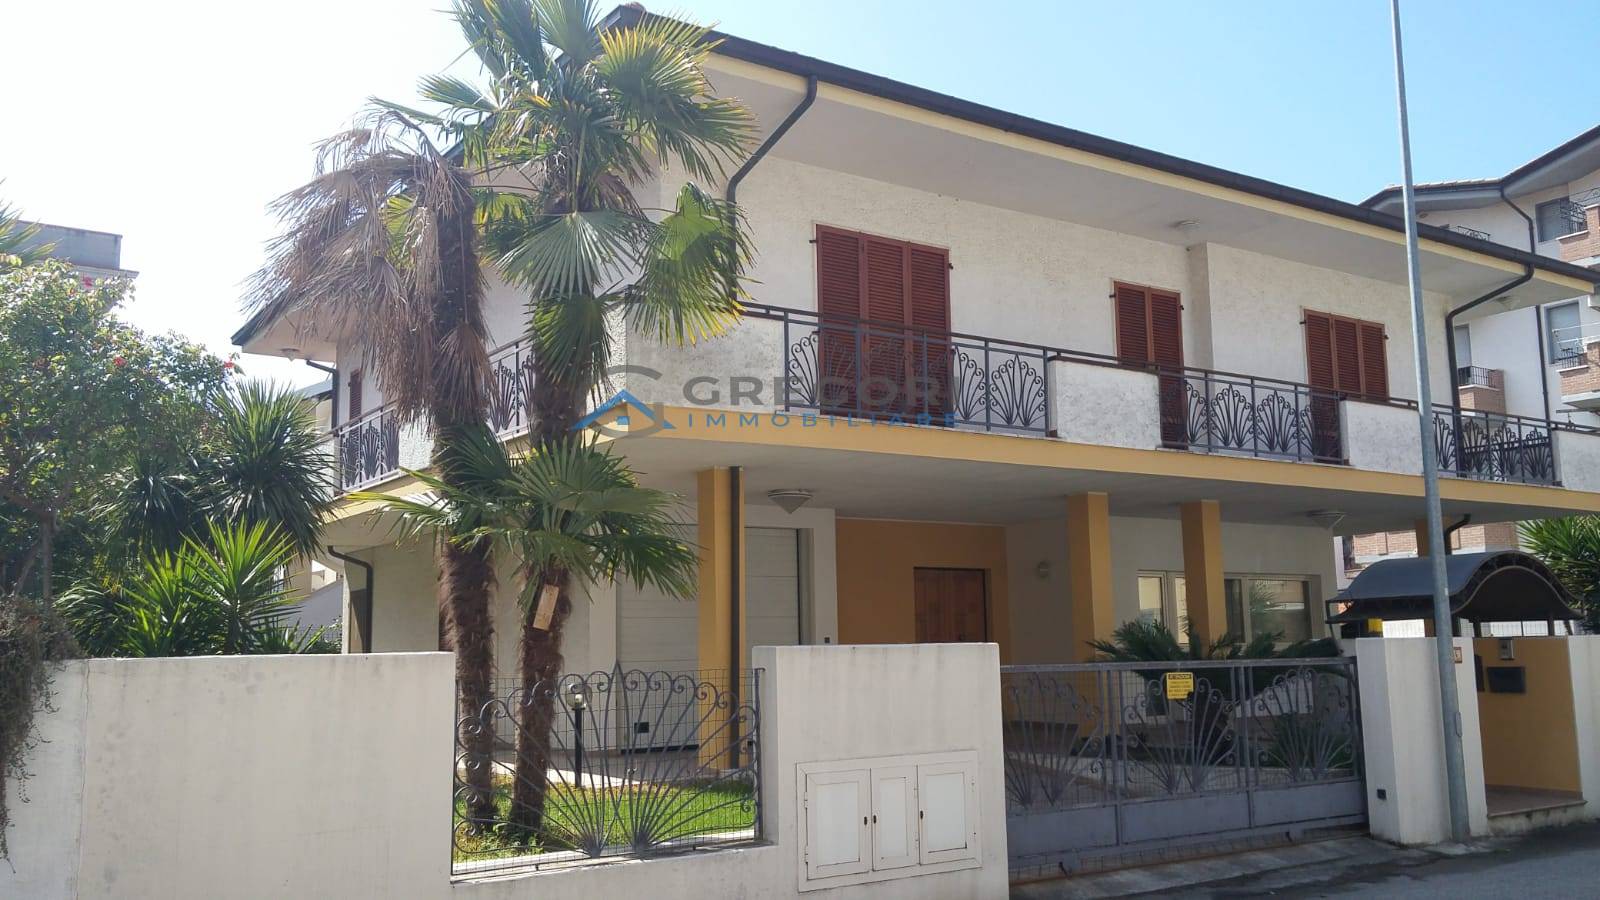 Villa in vendita a Alba Adriatica, 6 locali, prezzo € 390.000 | PortaleAgenzieImmobiliari.it